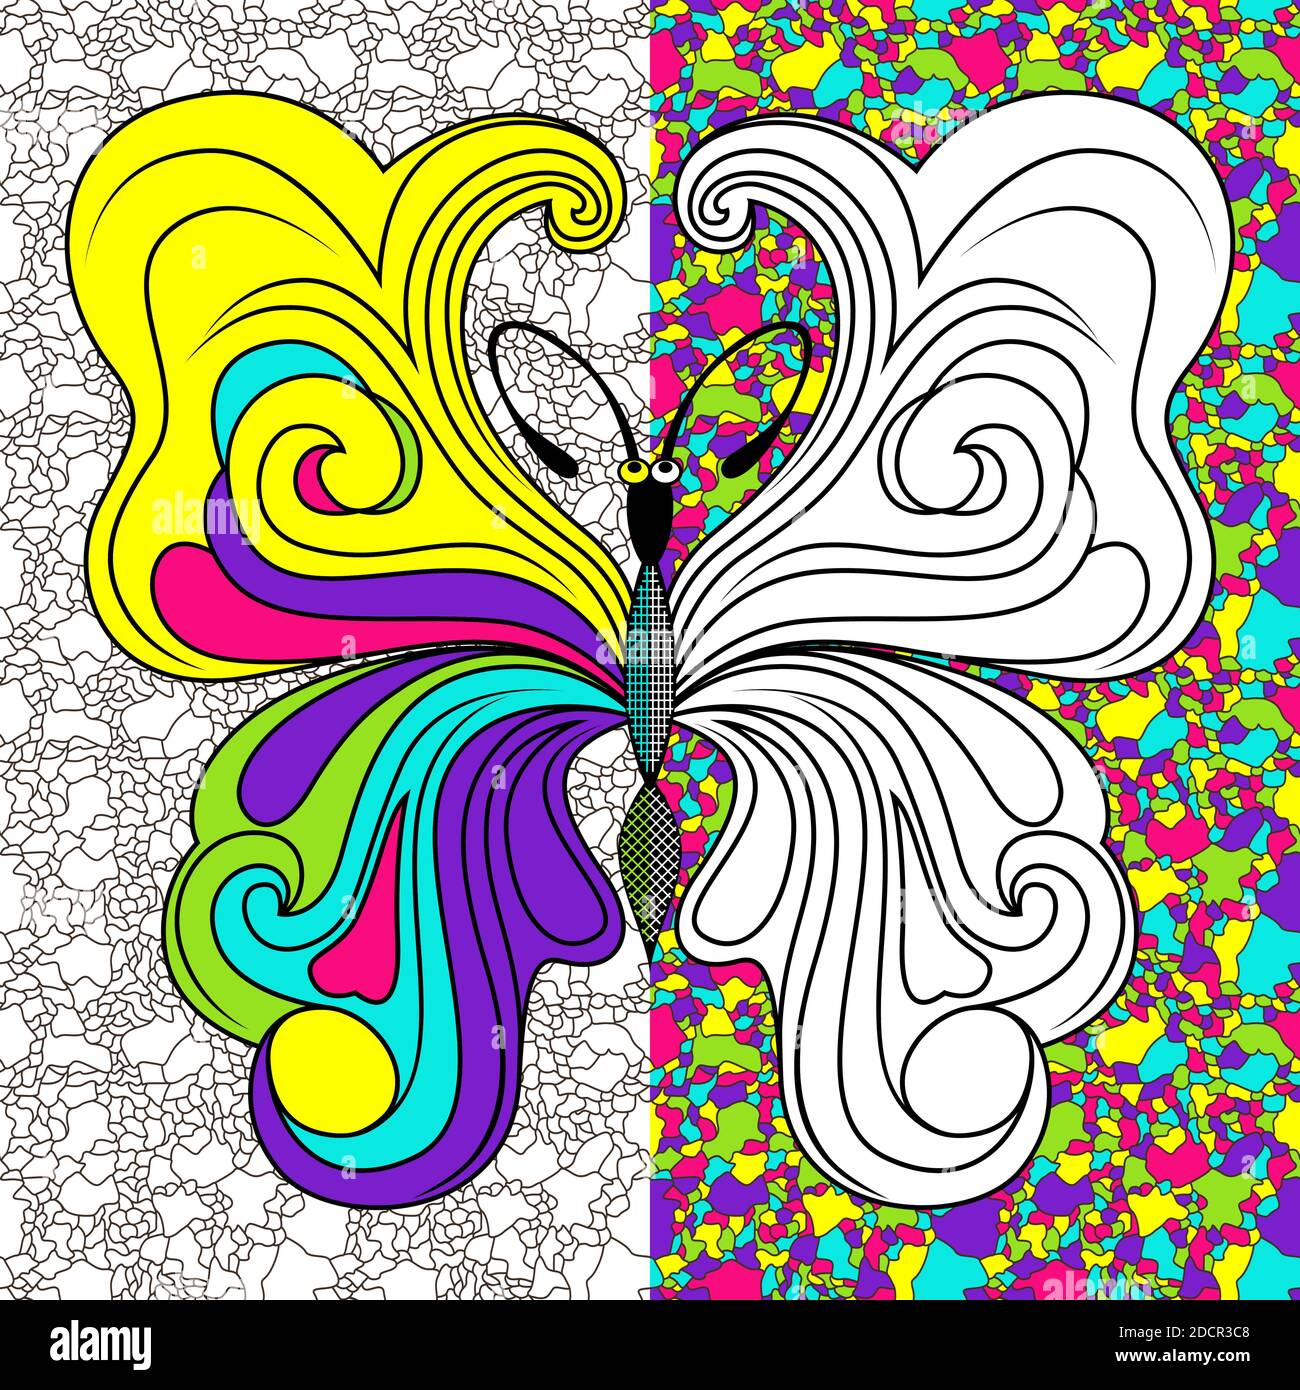 Bunte ornamentale stilisierte Schablonen von schönen Schmetterling auf dem Mosaik-Hintergrund, Handzeichnung Vektor-Illustration als Malbuch Stock Vektor